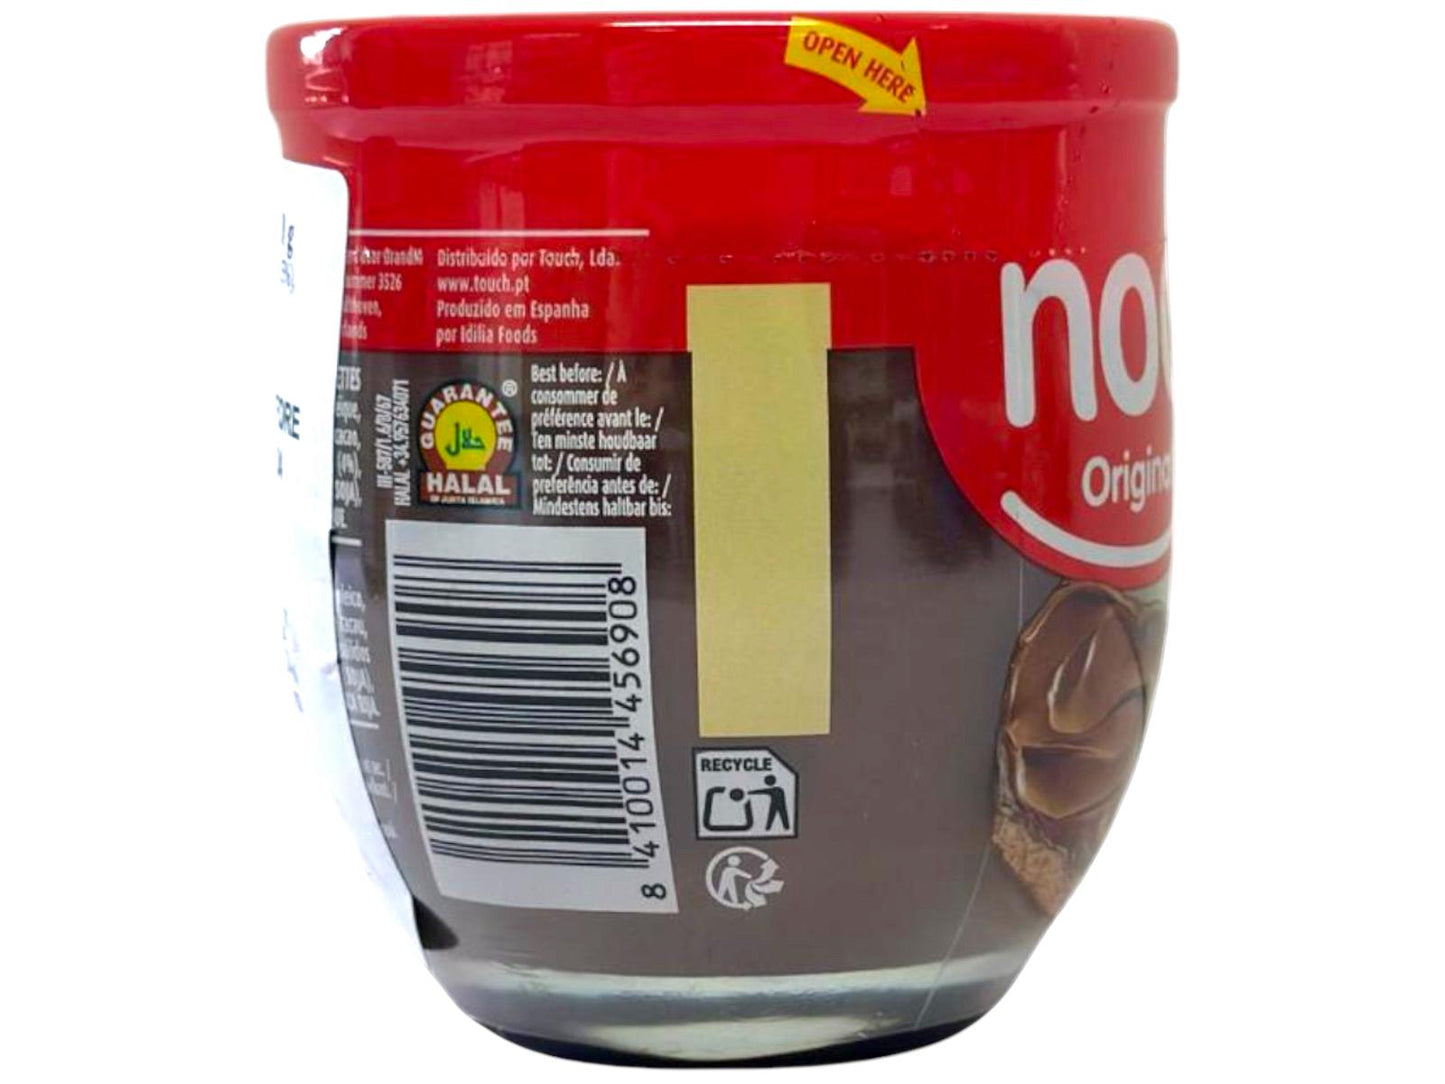 Nocilla Original Spanish Cocoa and Hazelnut Spread 190g